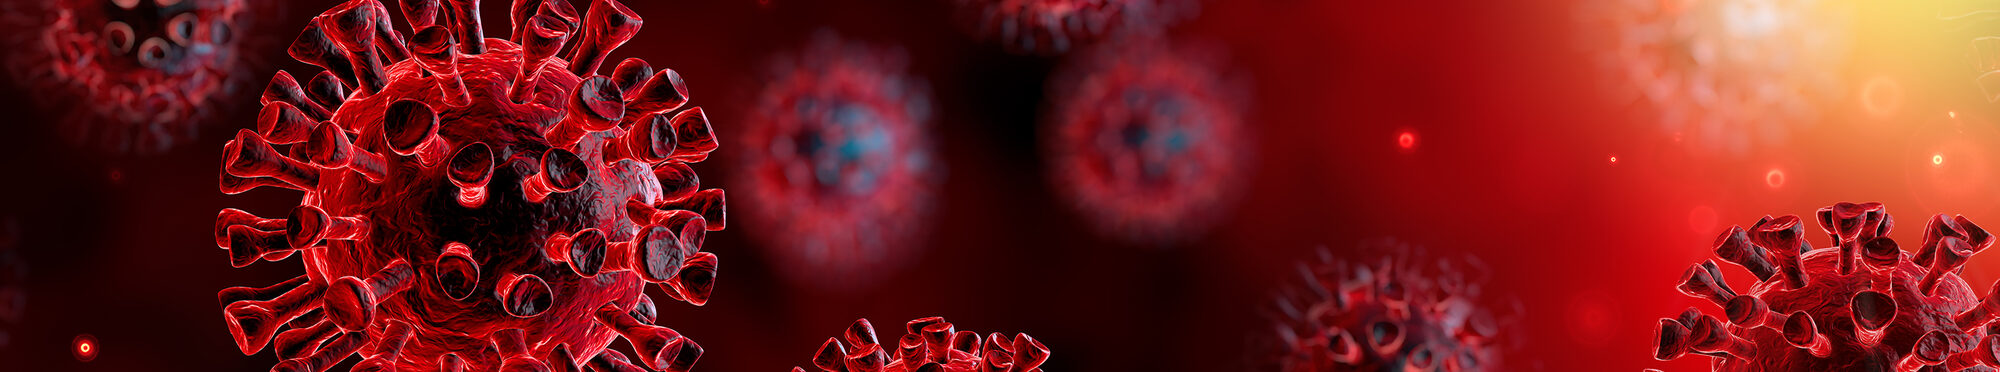 Motivbild Coronavirus [Foto: ©Romolo Tavani - stock.adobe.com]